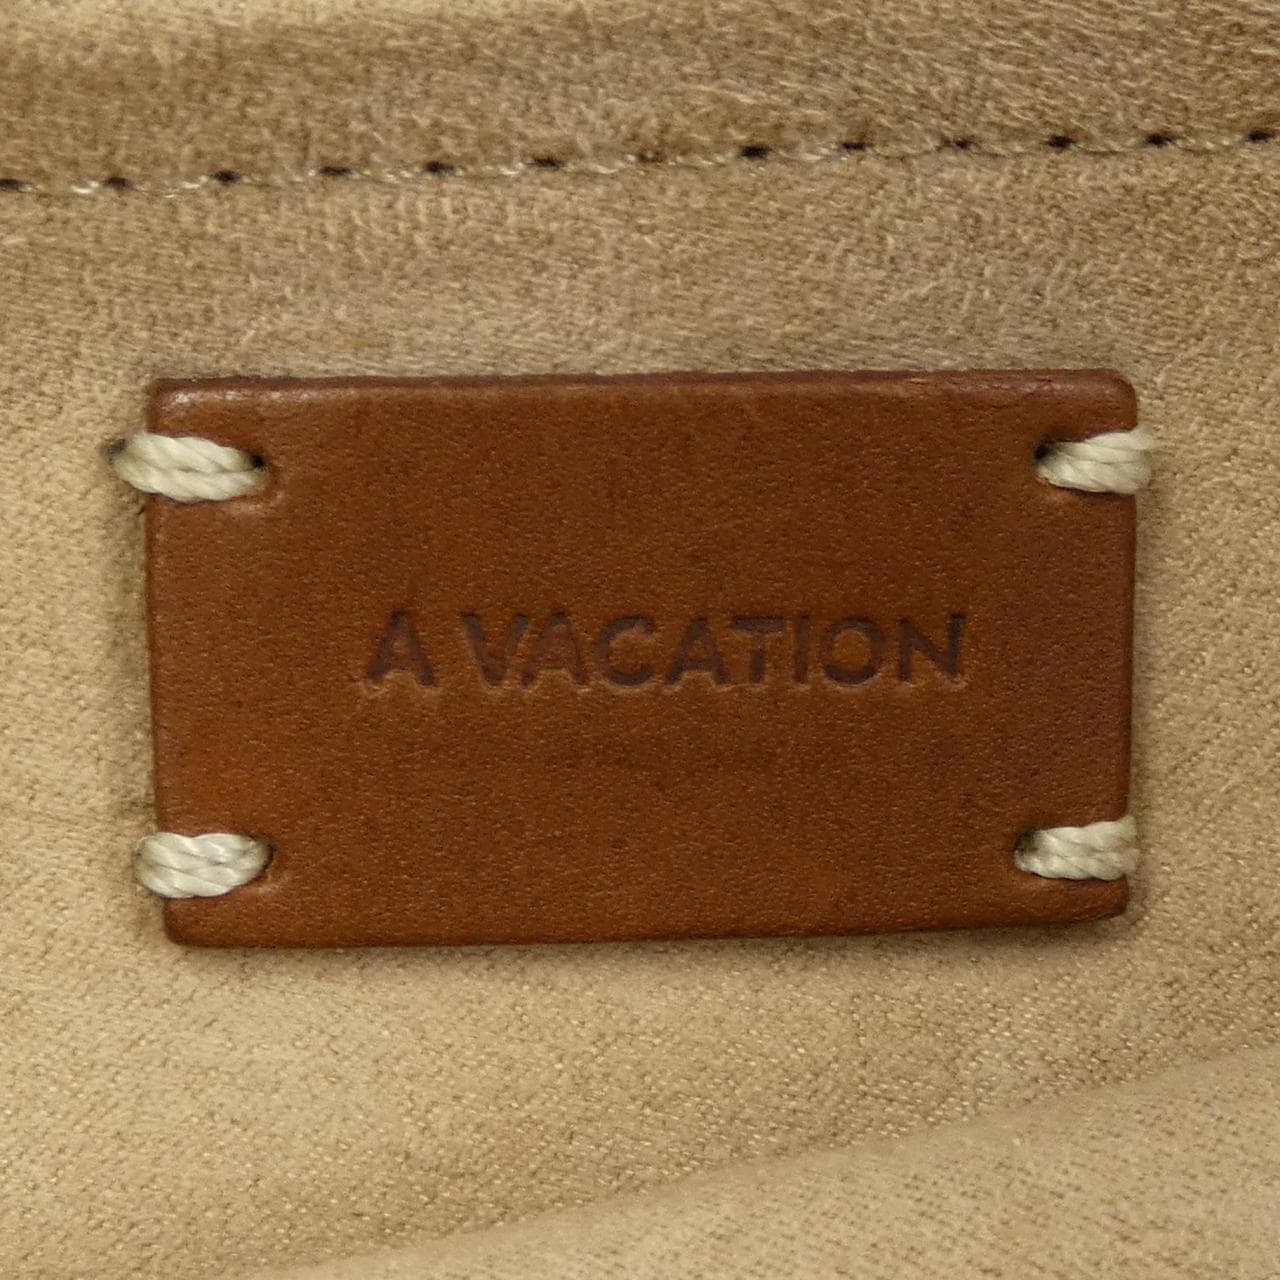 Vacation A VACATION BAG